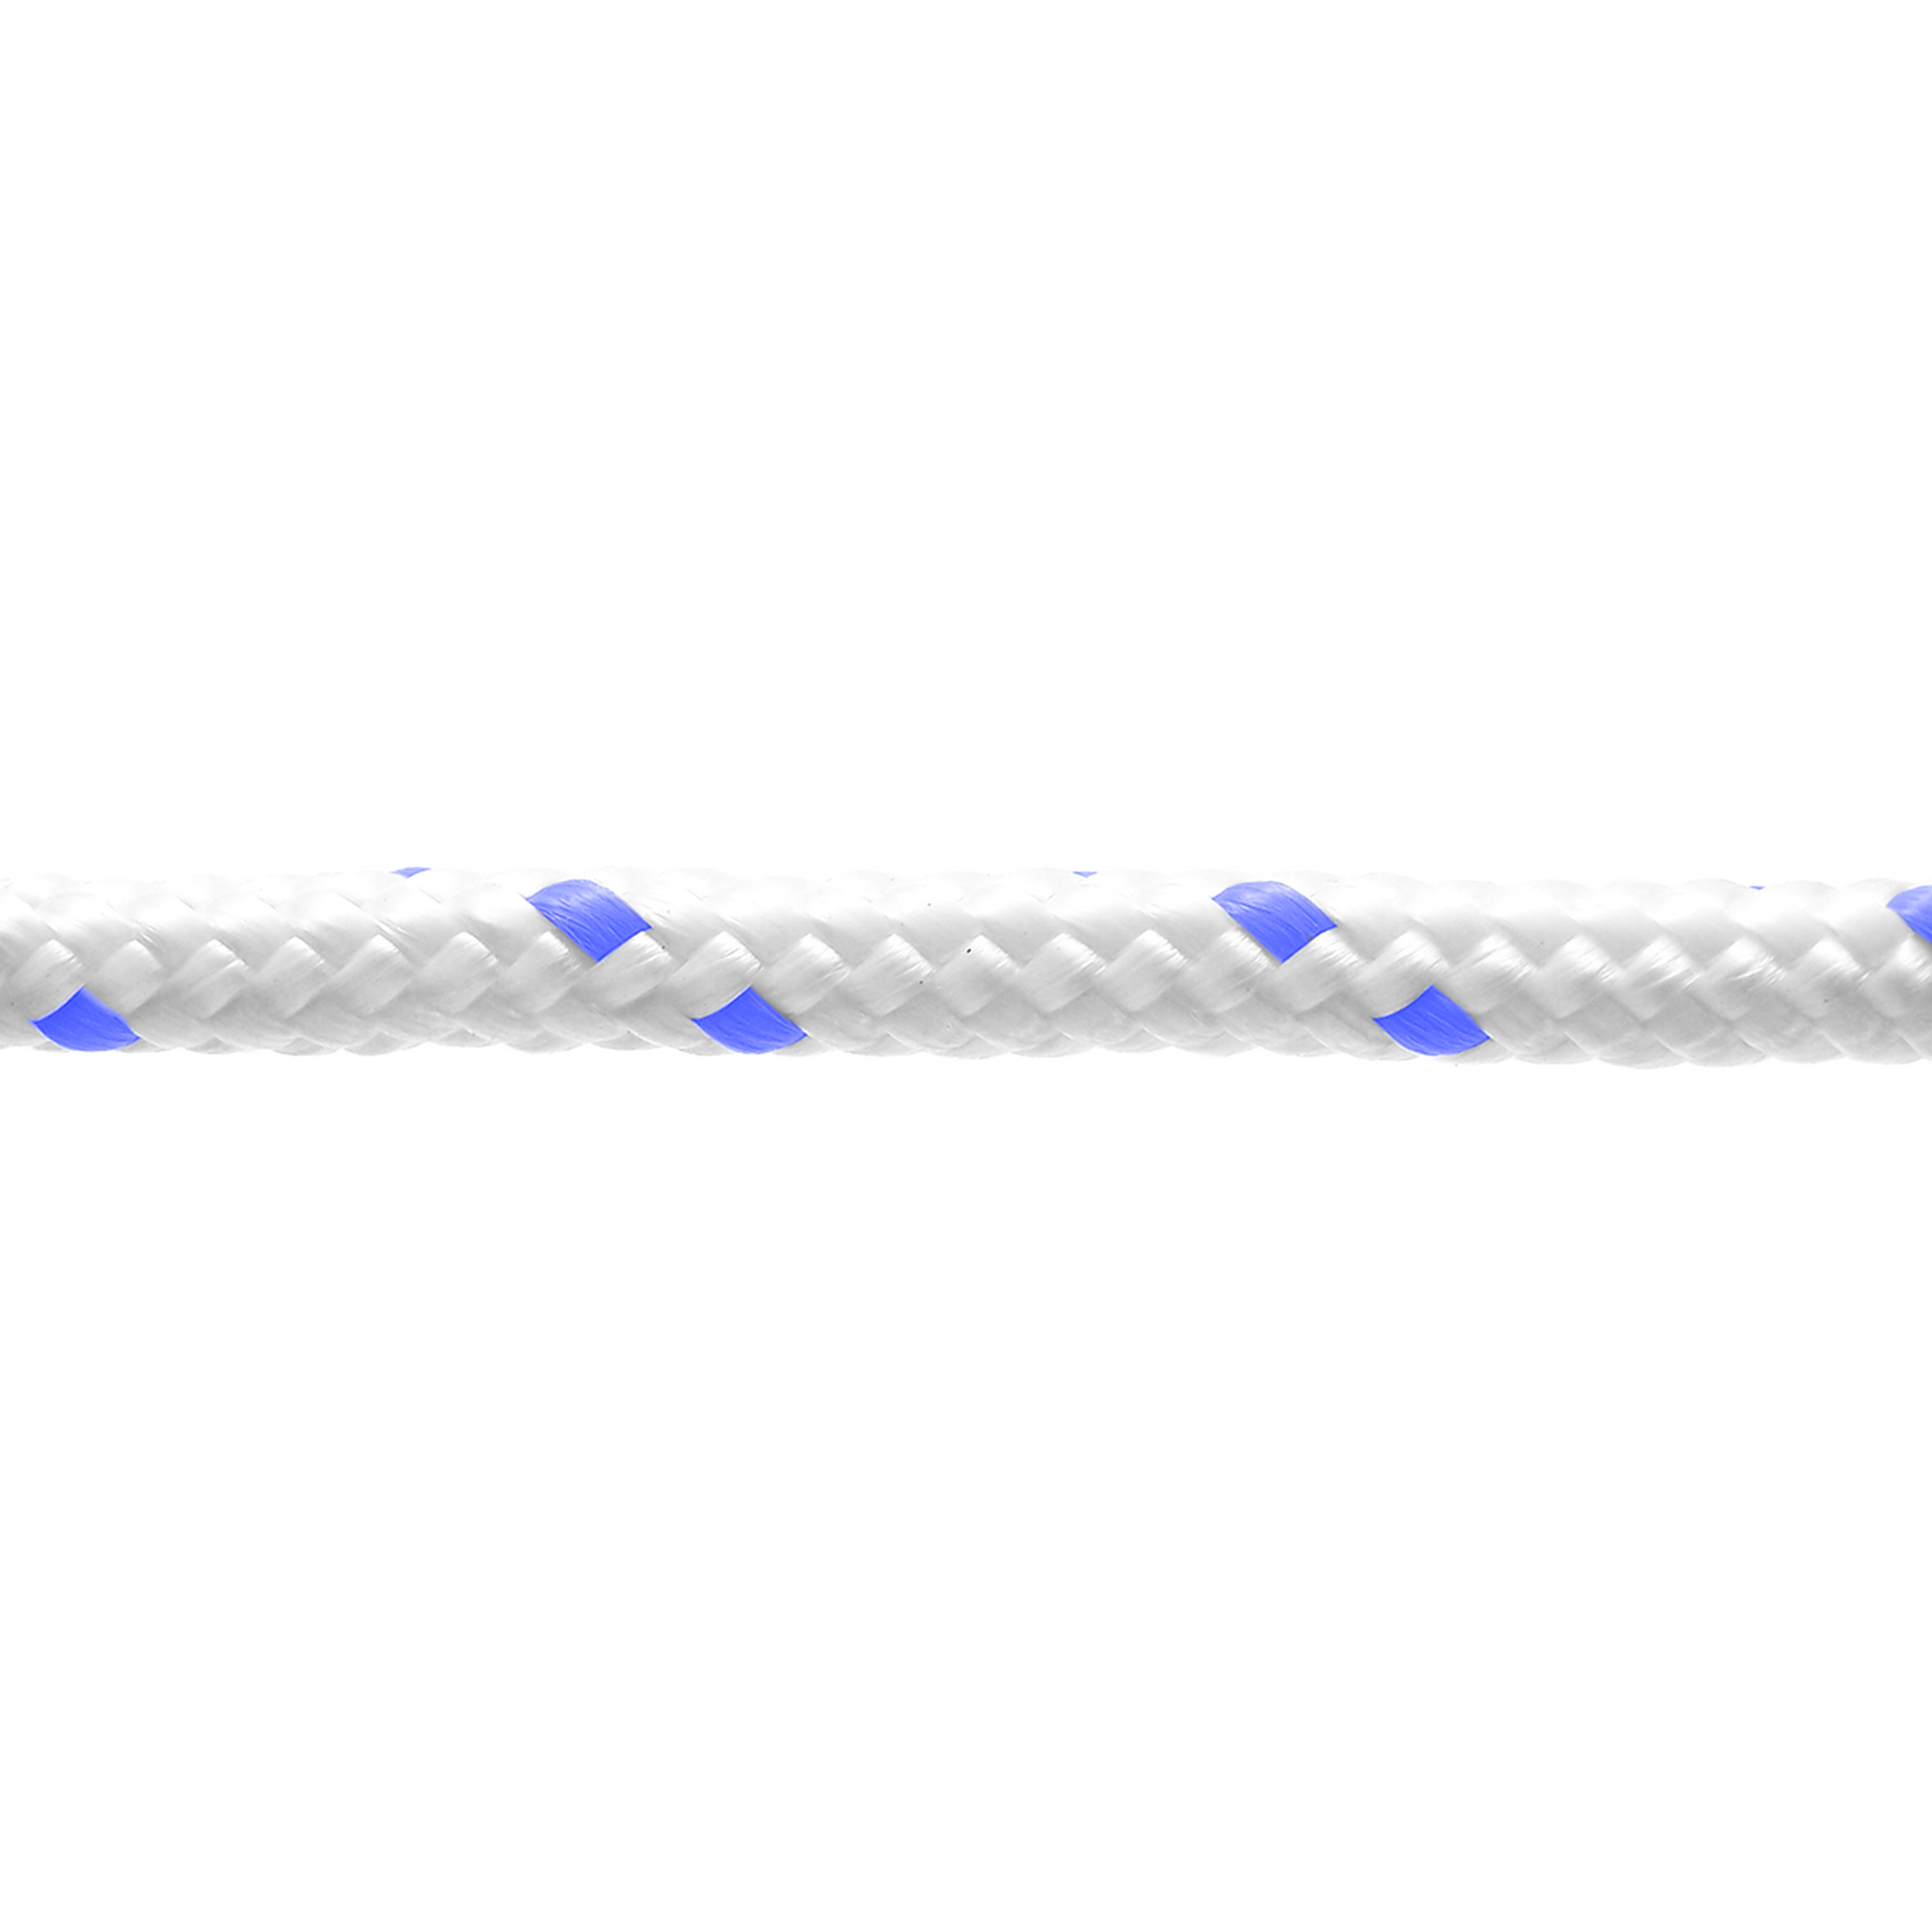 Polypropylen-Seil geflochten weiß/blau Ø 12 mm x 20 m + product picture